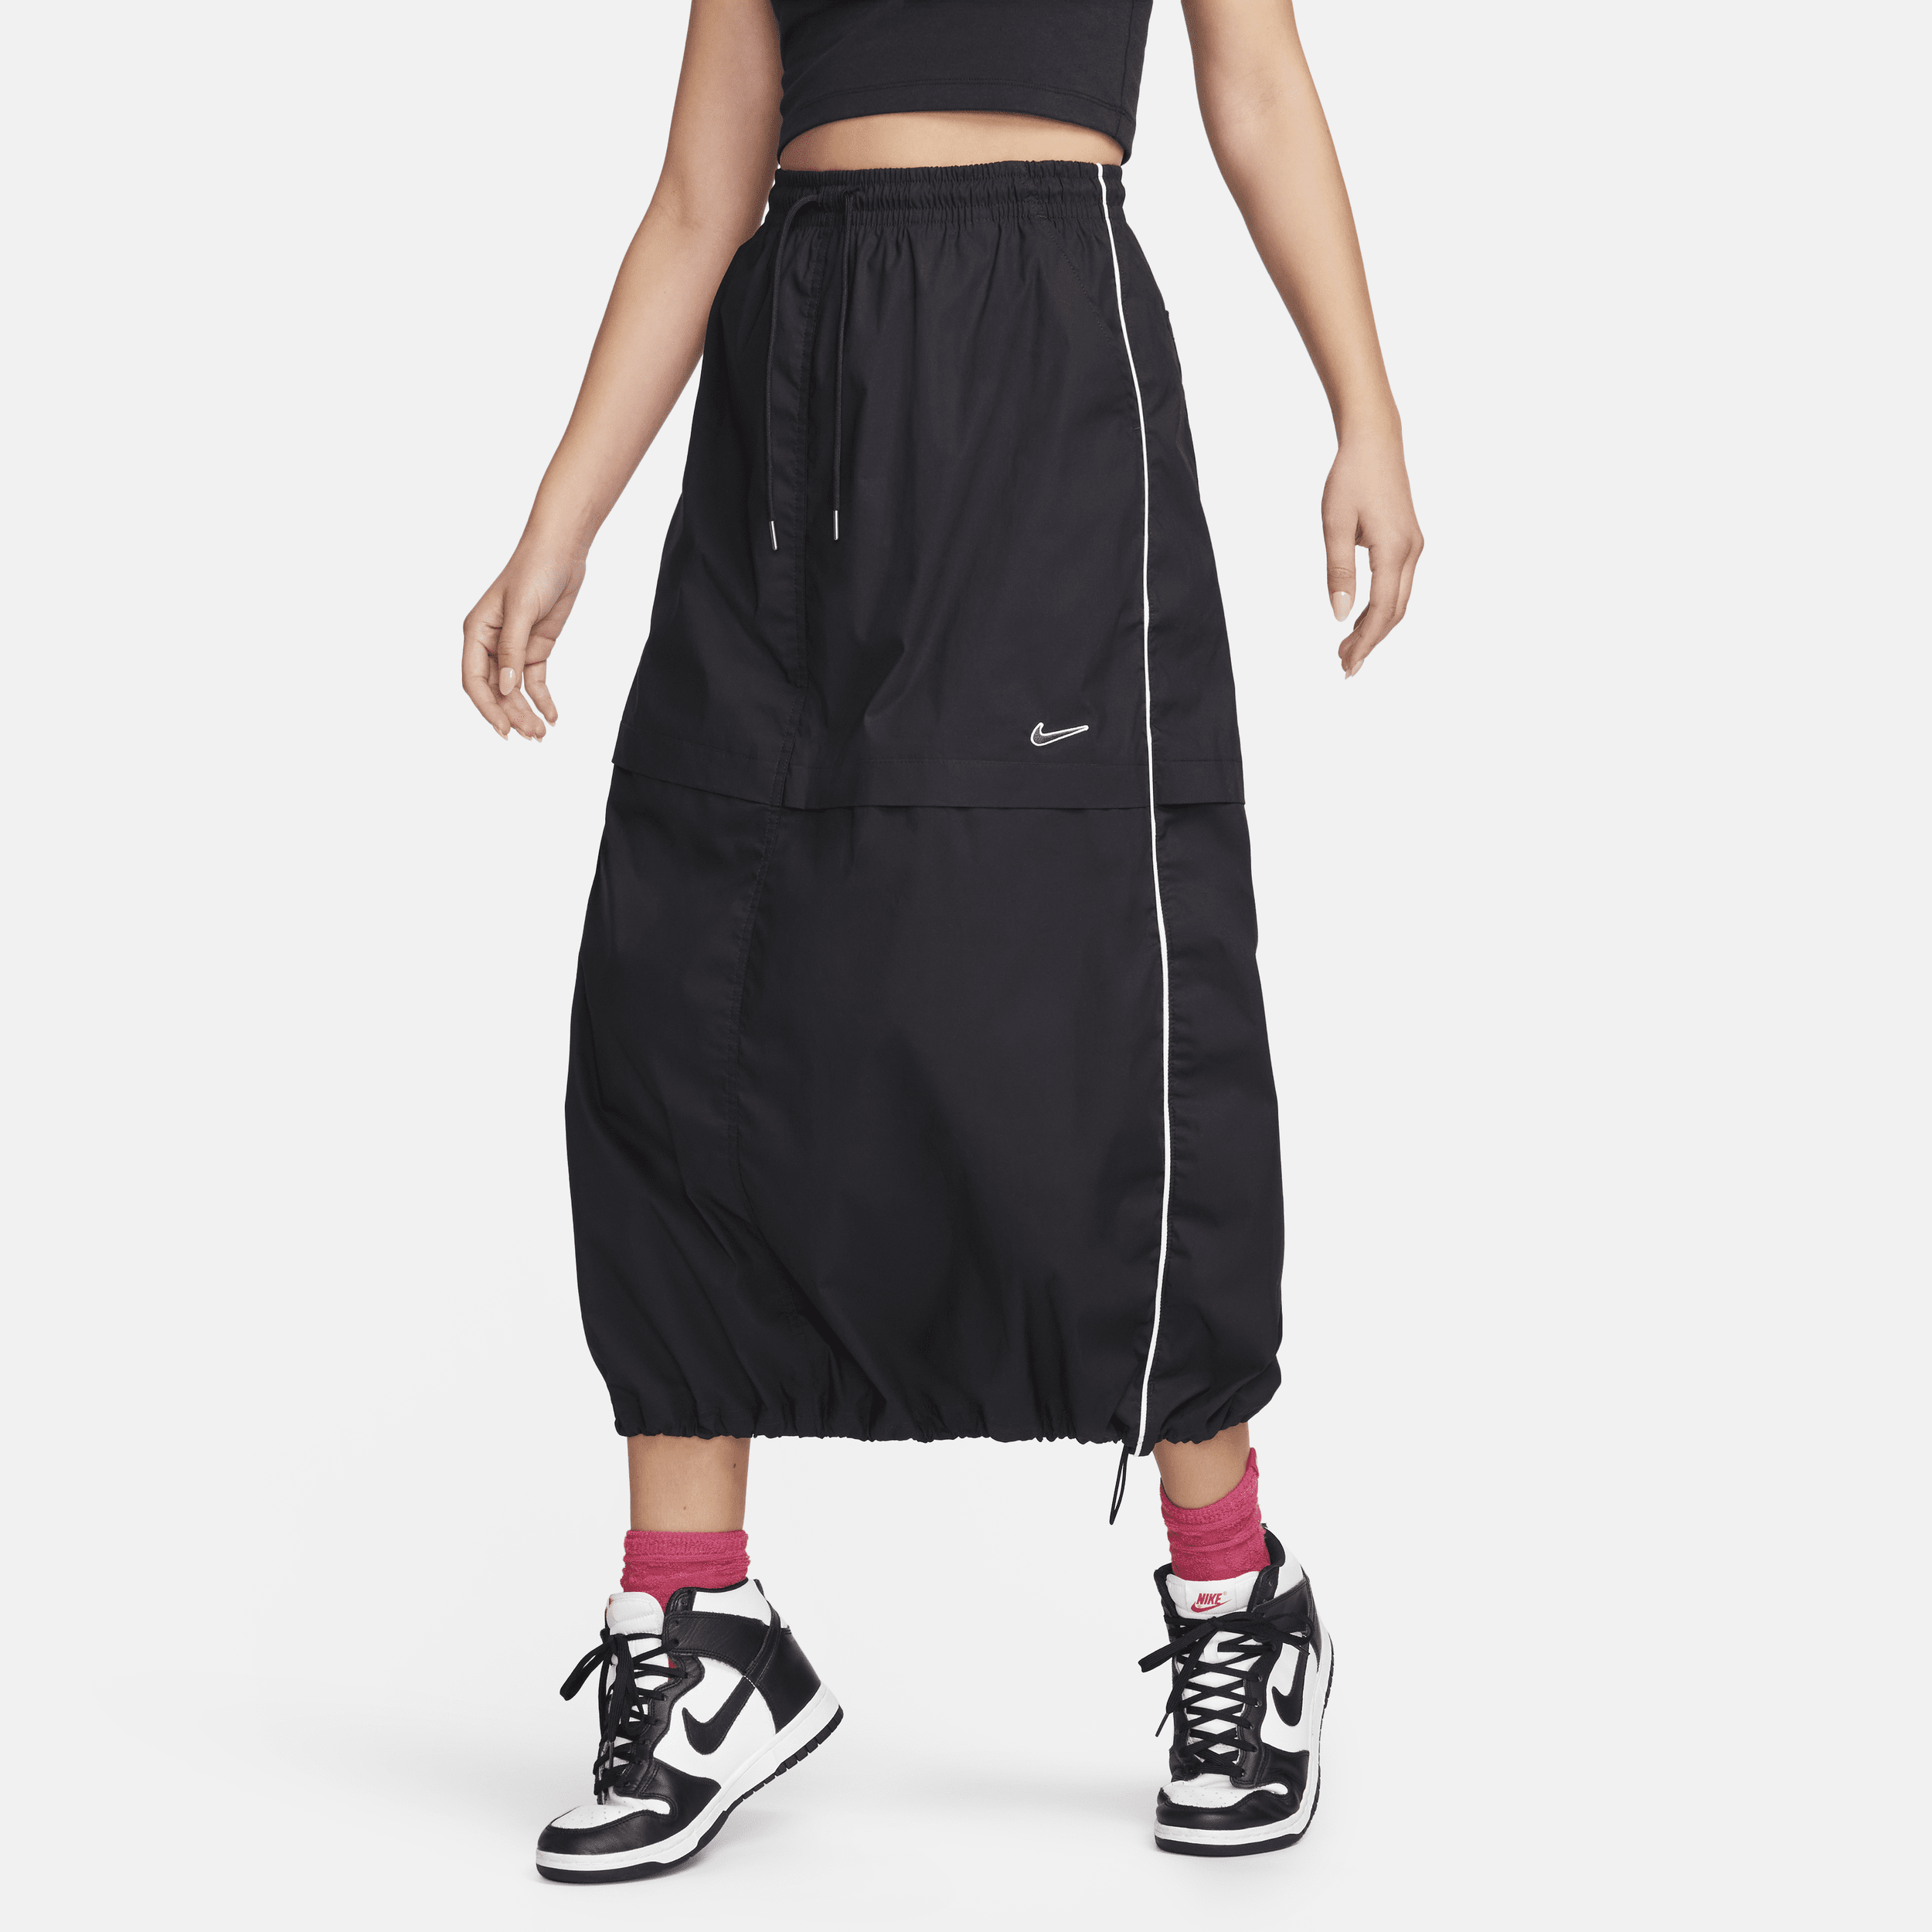 Vævet Nike Sportswear-nederdel til kvinder - sort